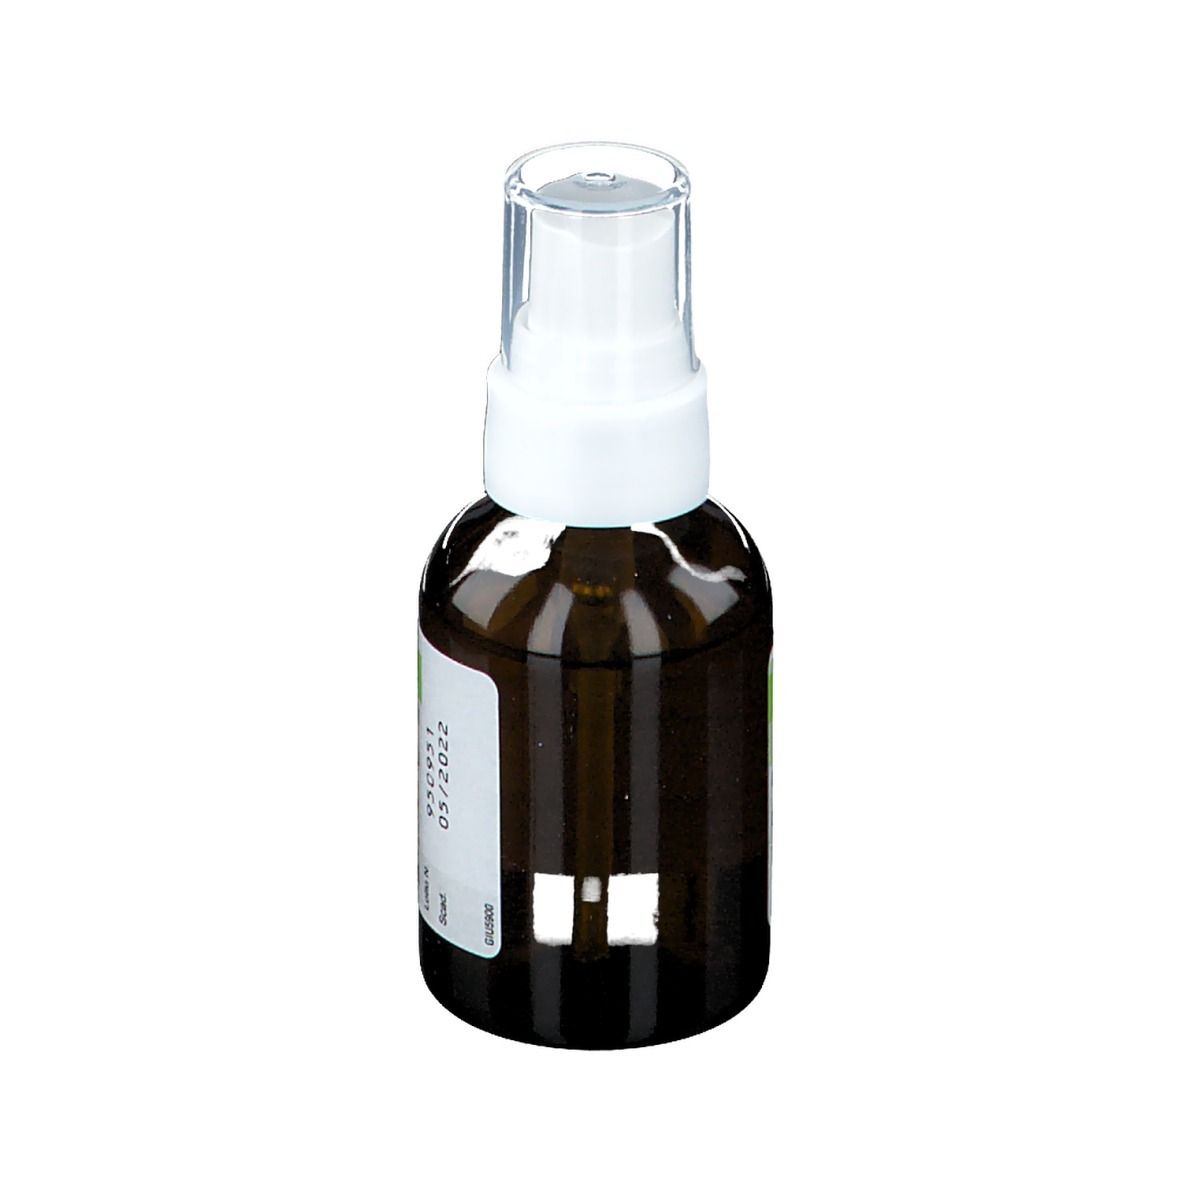 Suadian 1% Naftifina cloridrato Flacone con nebulizzatore